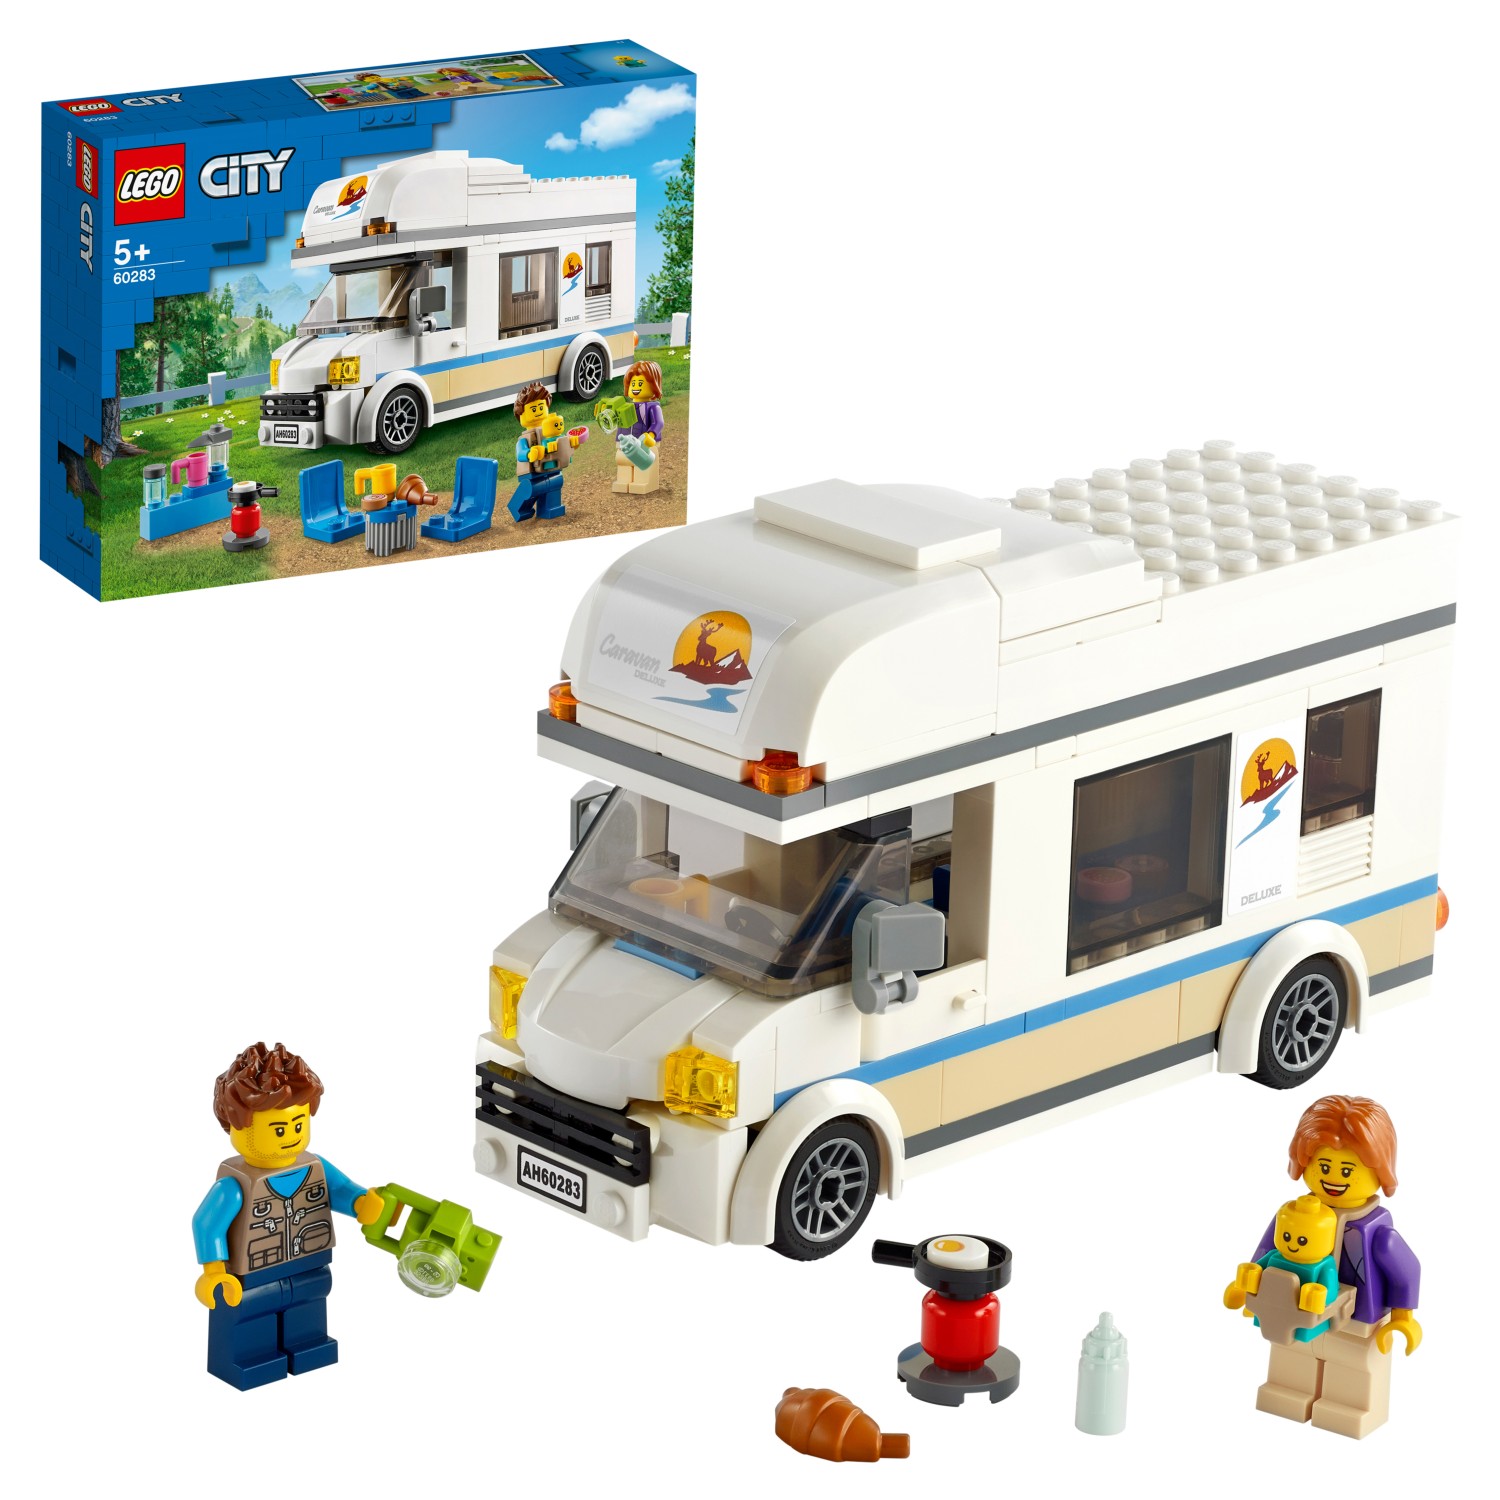 Конструктор LEGO City Great Vehicles 60283 Отпуск в доме на колёсах конструктор lego city great vehicles багги 60145